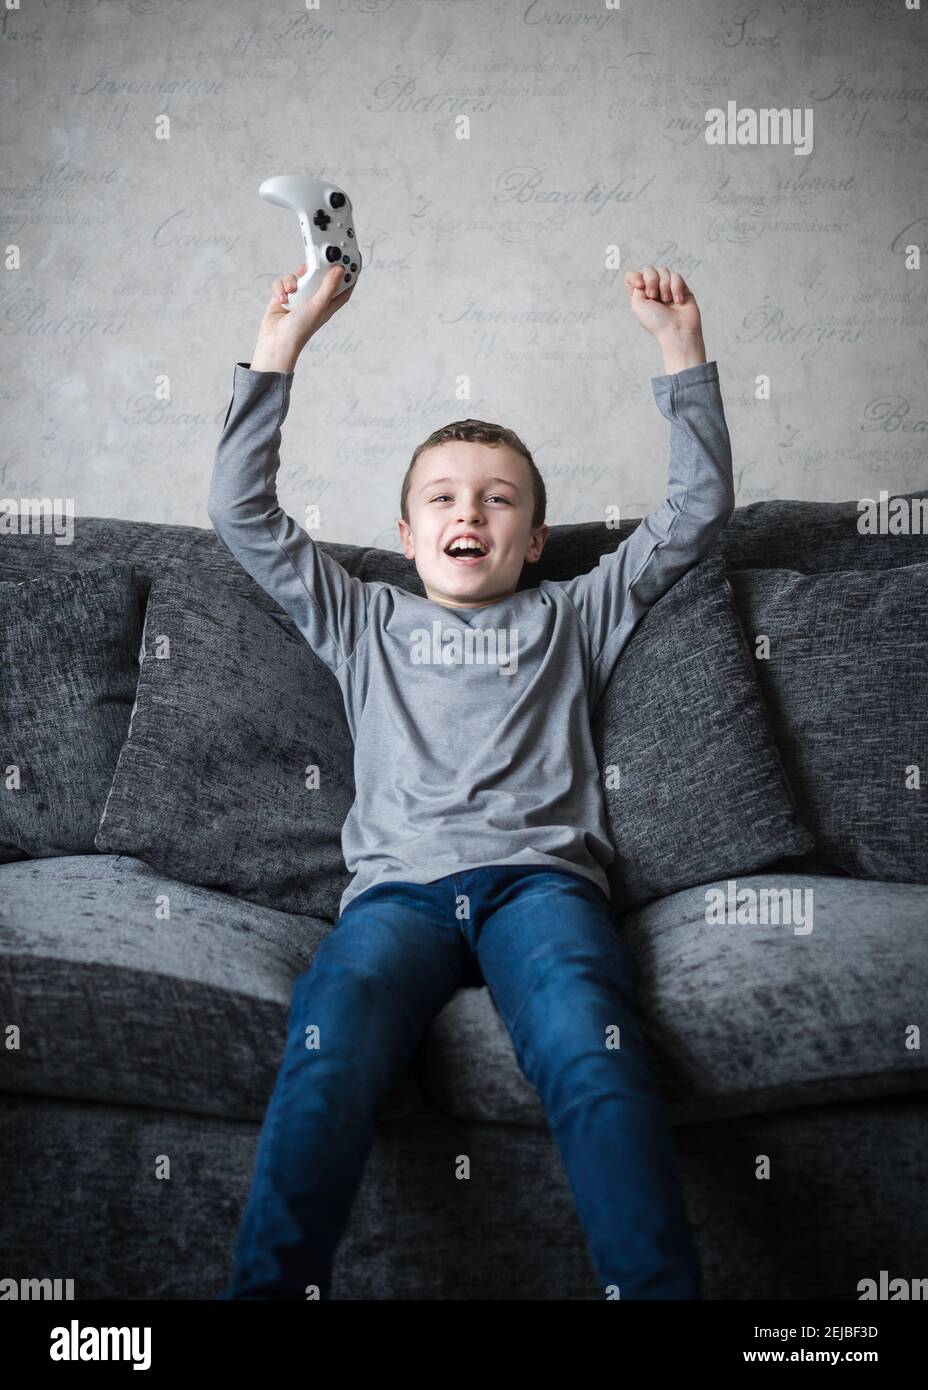 Jeune adorable petit garçon assis sur un canapé avec ordinateur manette de jeu de console de manette de bras dans l'air acclamations criant avec excitation après avoir gagné le jeu Banque D'Images